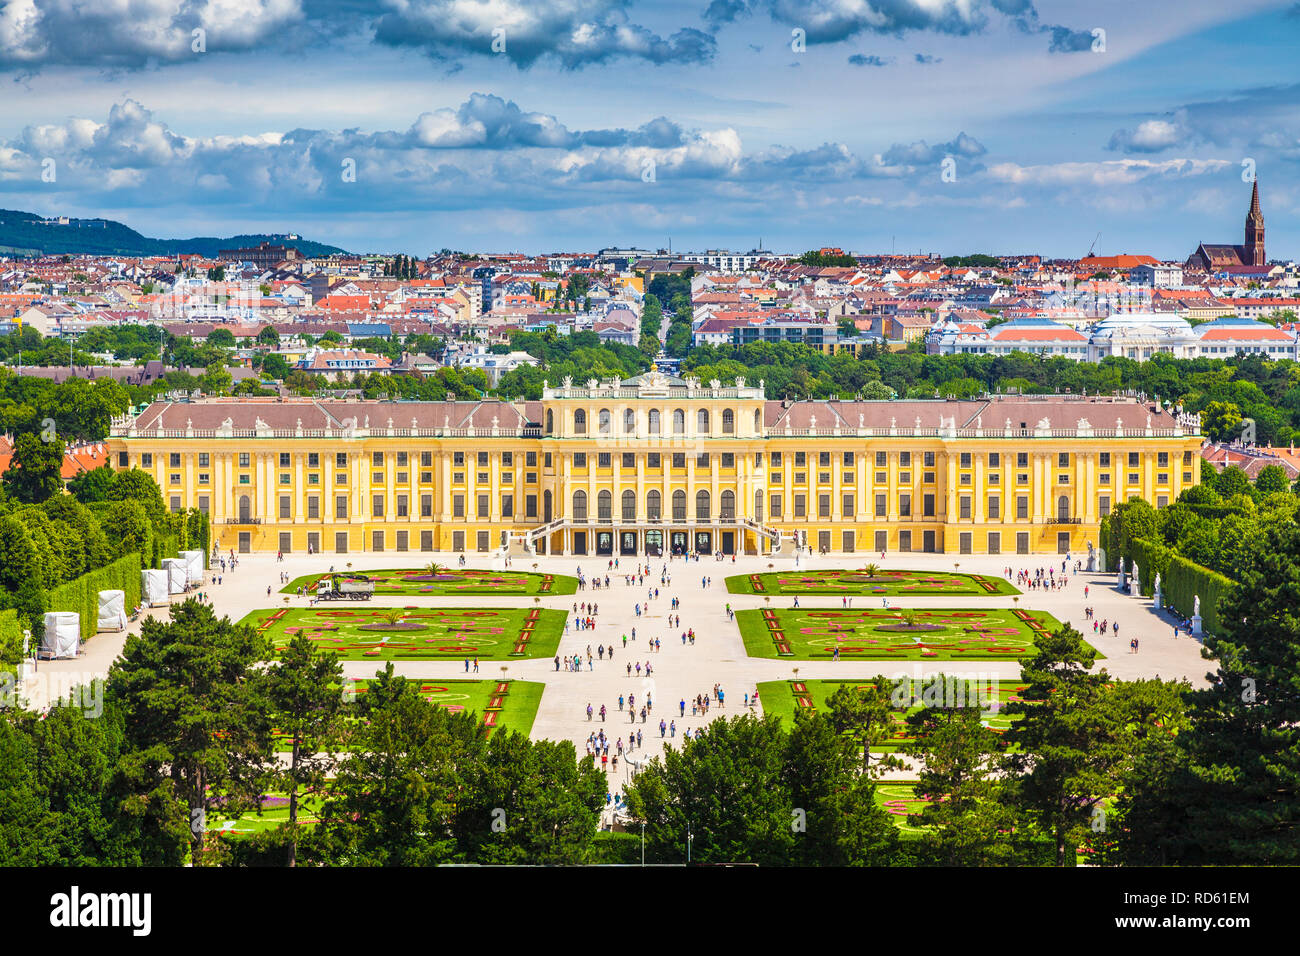 Visualizzazione classica del famoso Palazzo di Schonbrunn con grande parterre giardino in una bella giornata di sole con cielo blu e nuvole in estate, Vienna, Austria Foto Stock